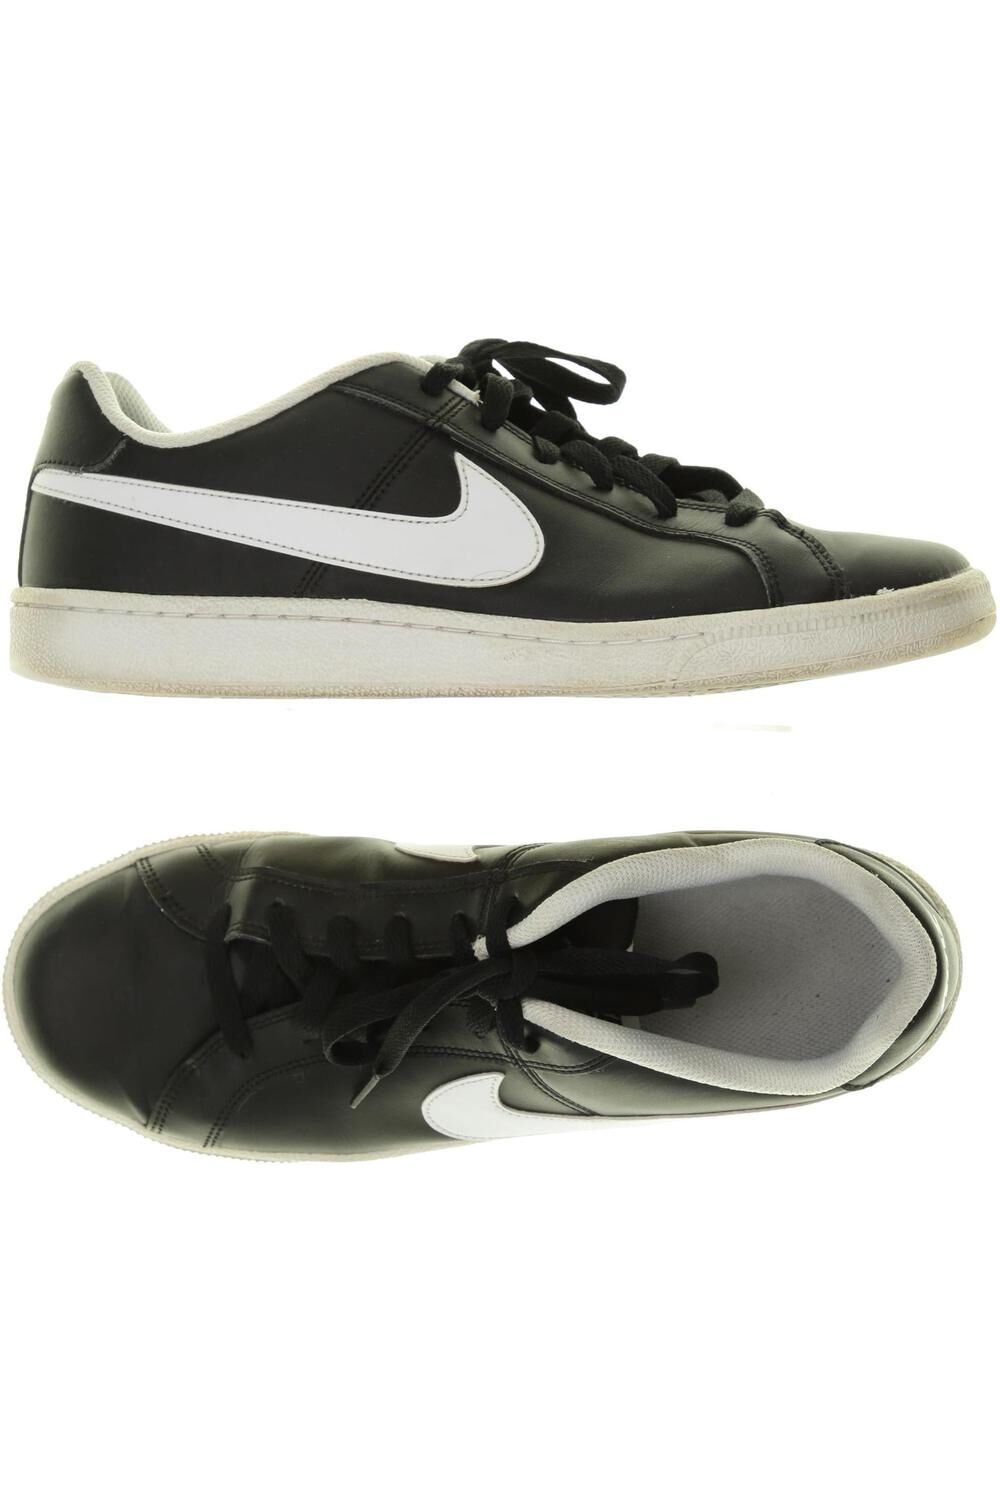 Nike Herren Sneakers schwarz, DE 44 schwarz